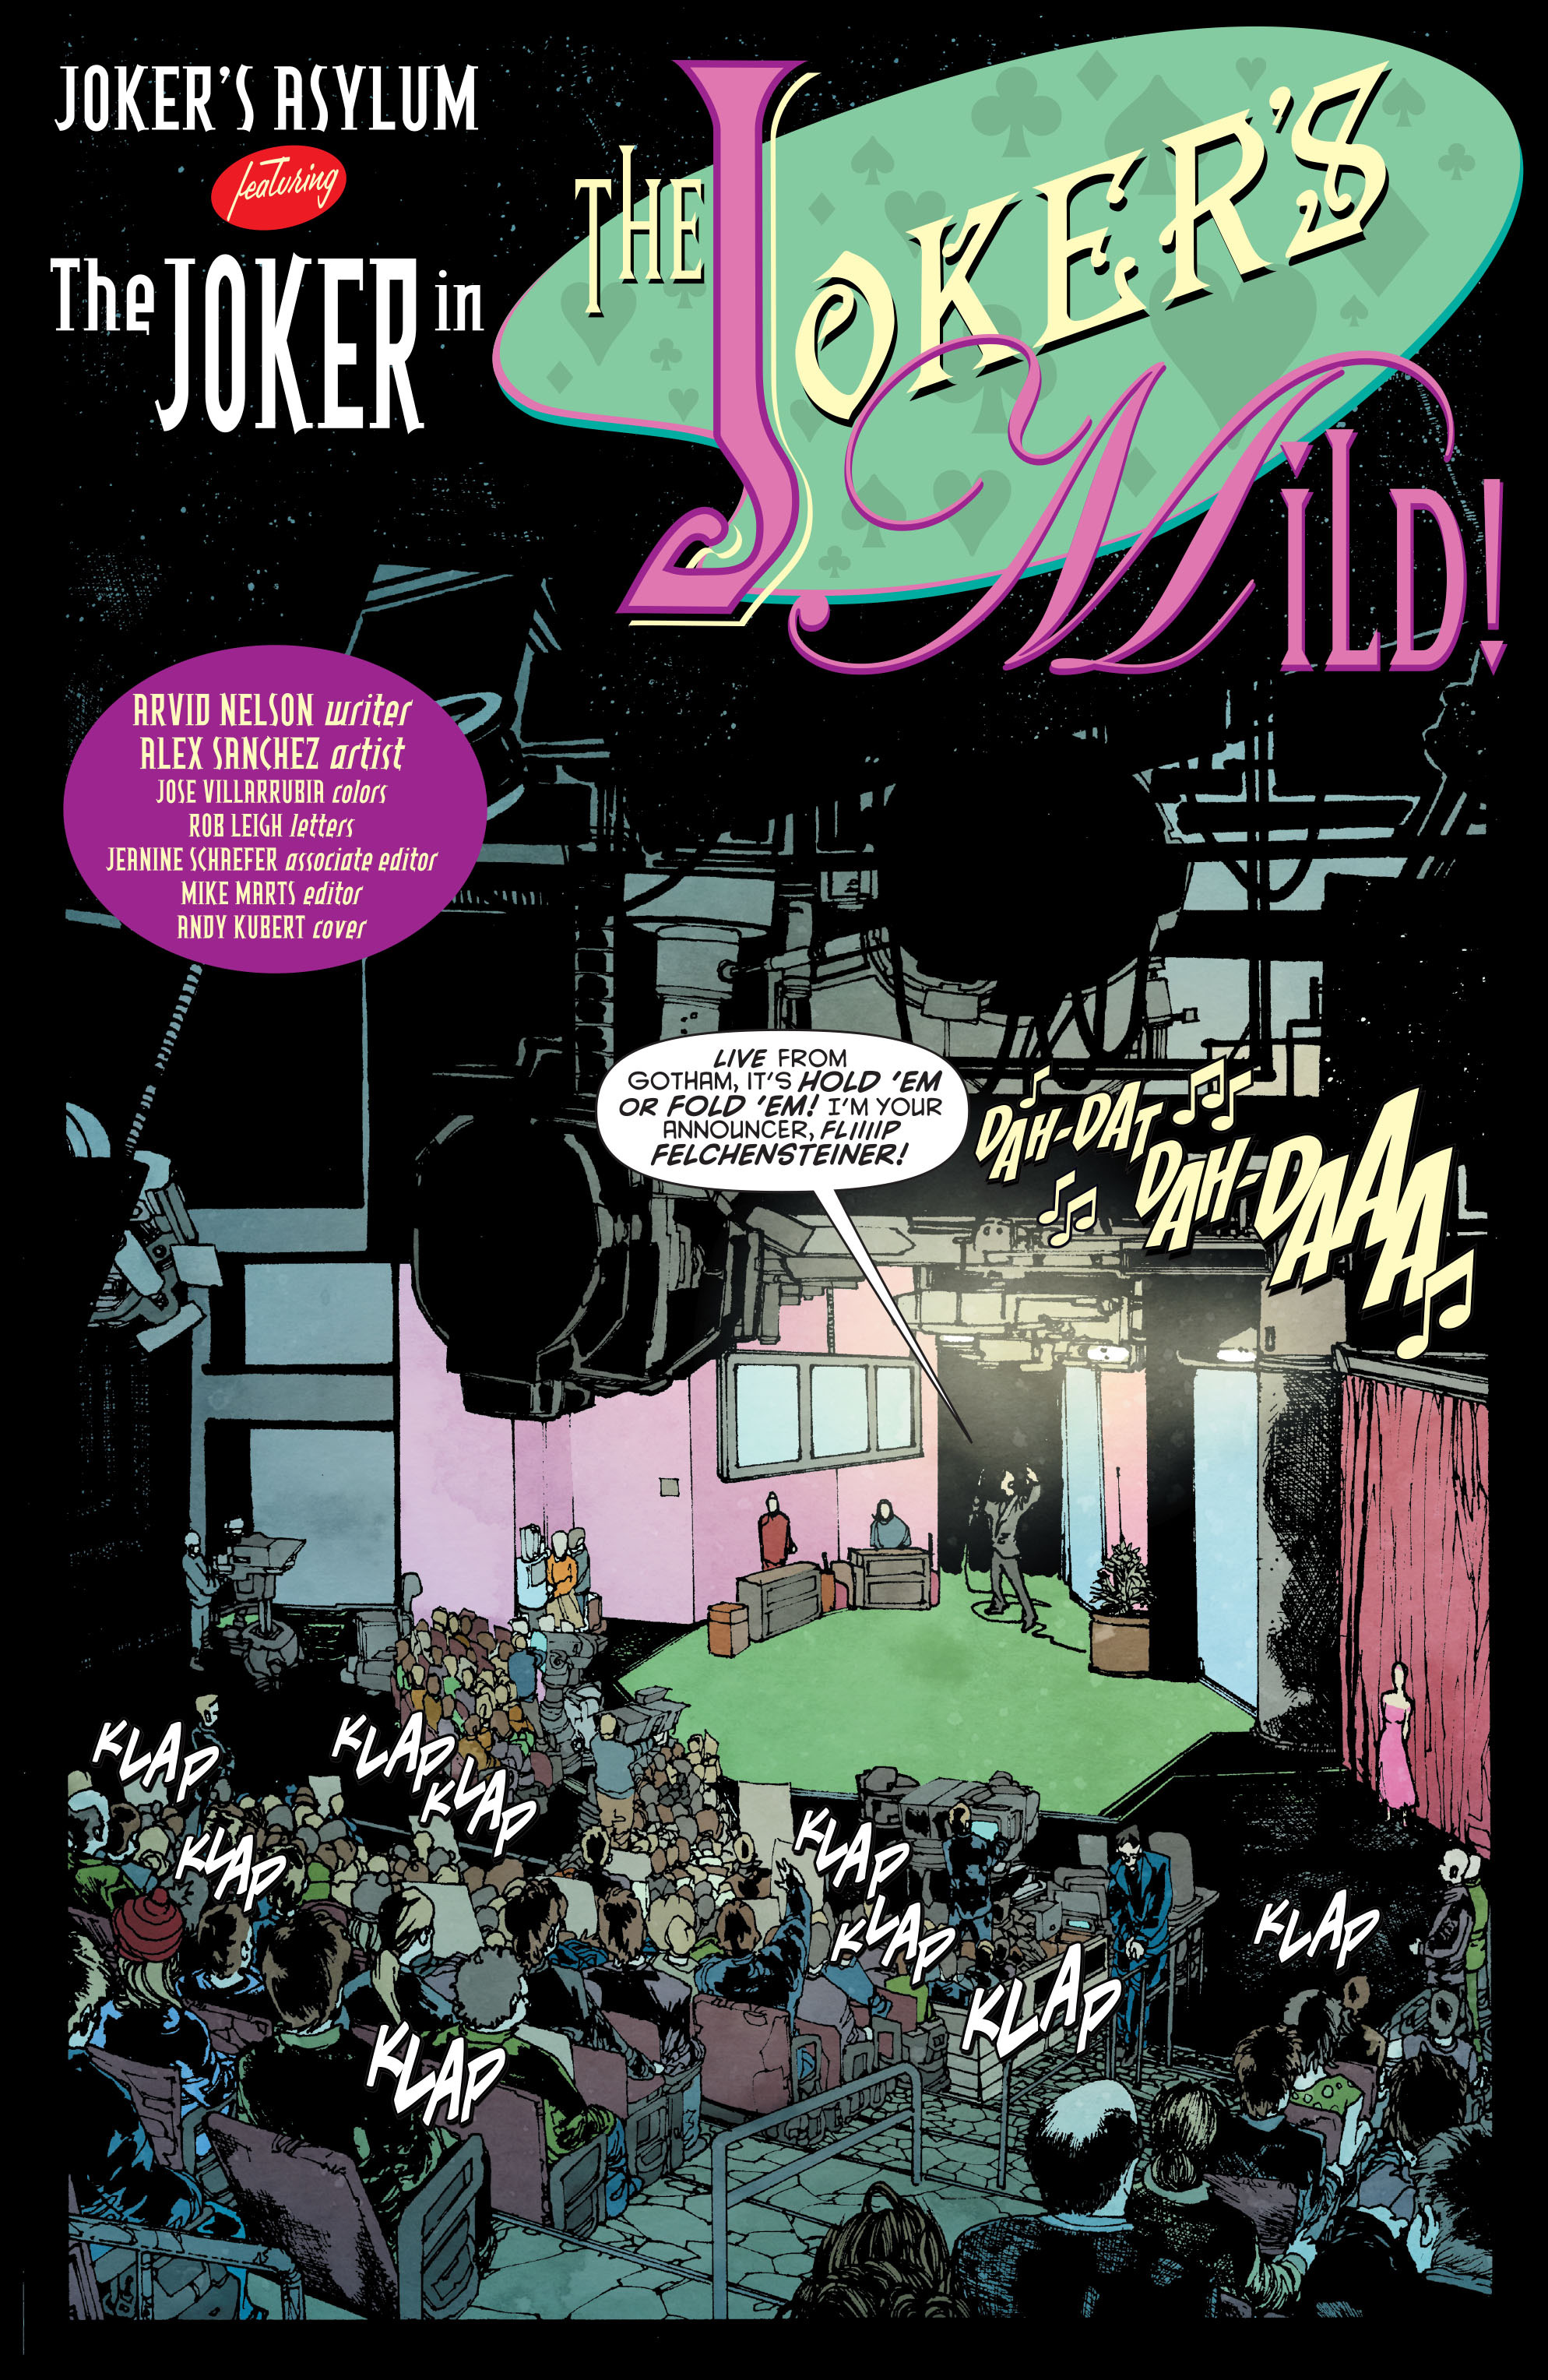 Read online Joker's Asylum: The Joker comic -  Issue # Full - 3